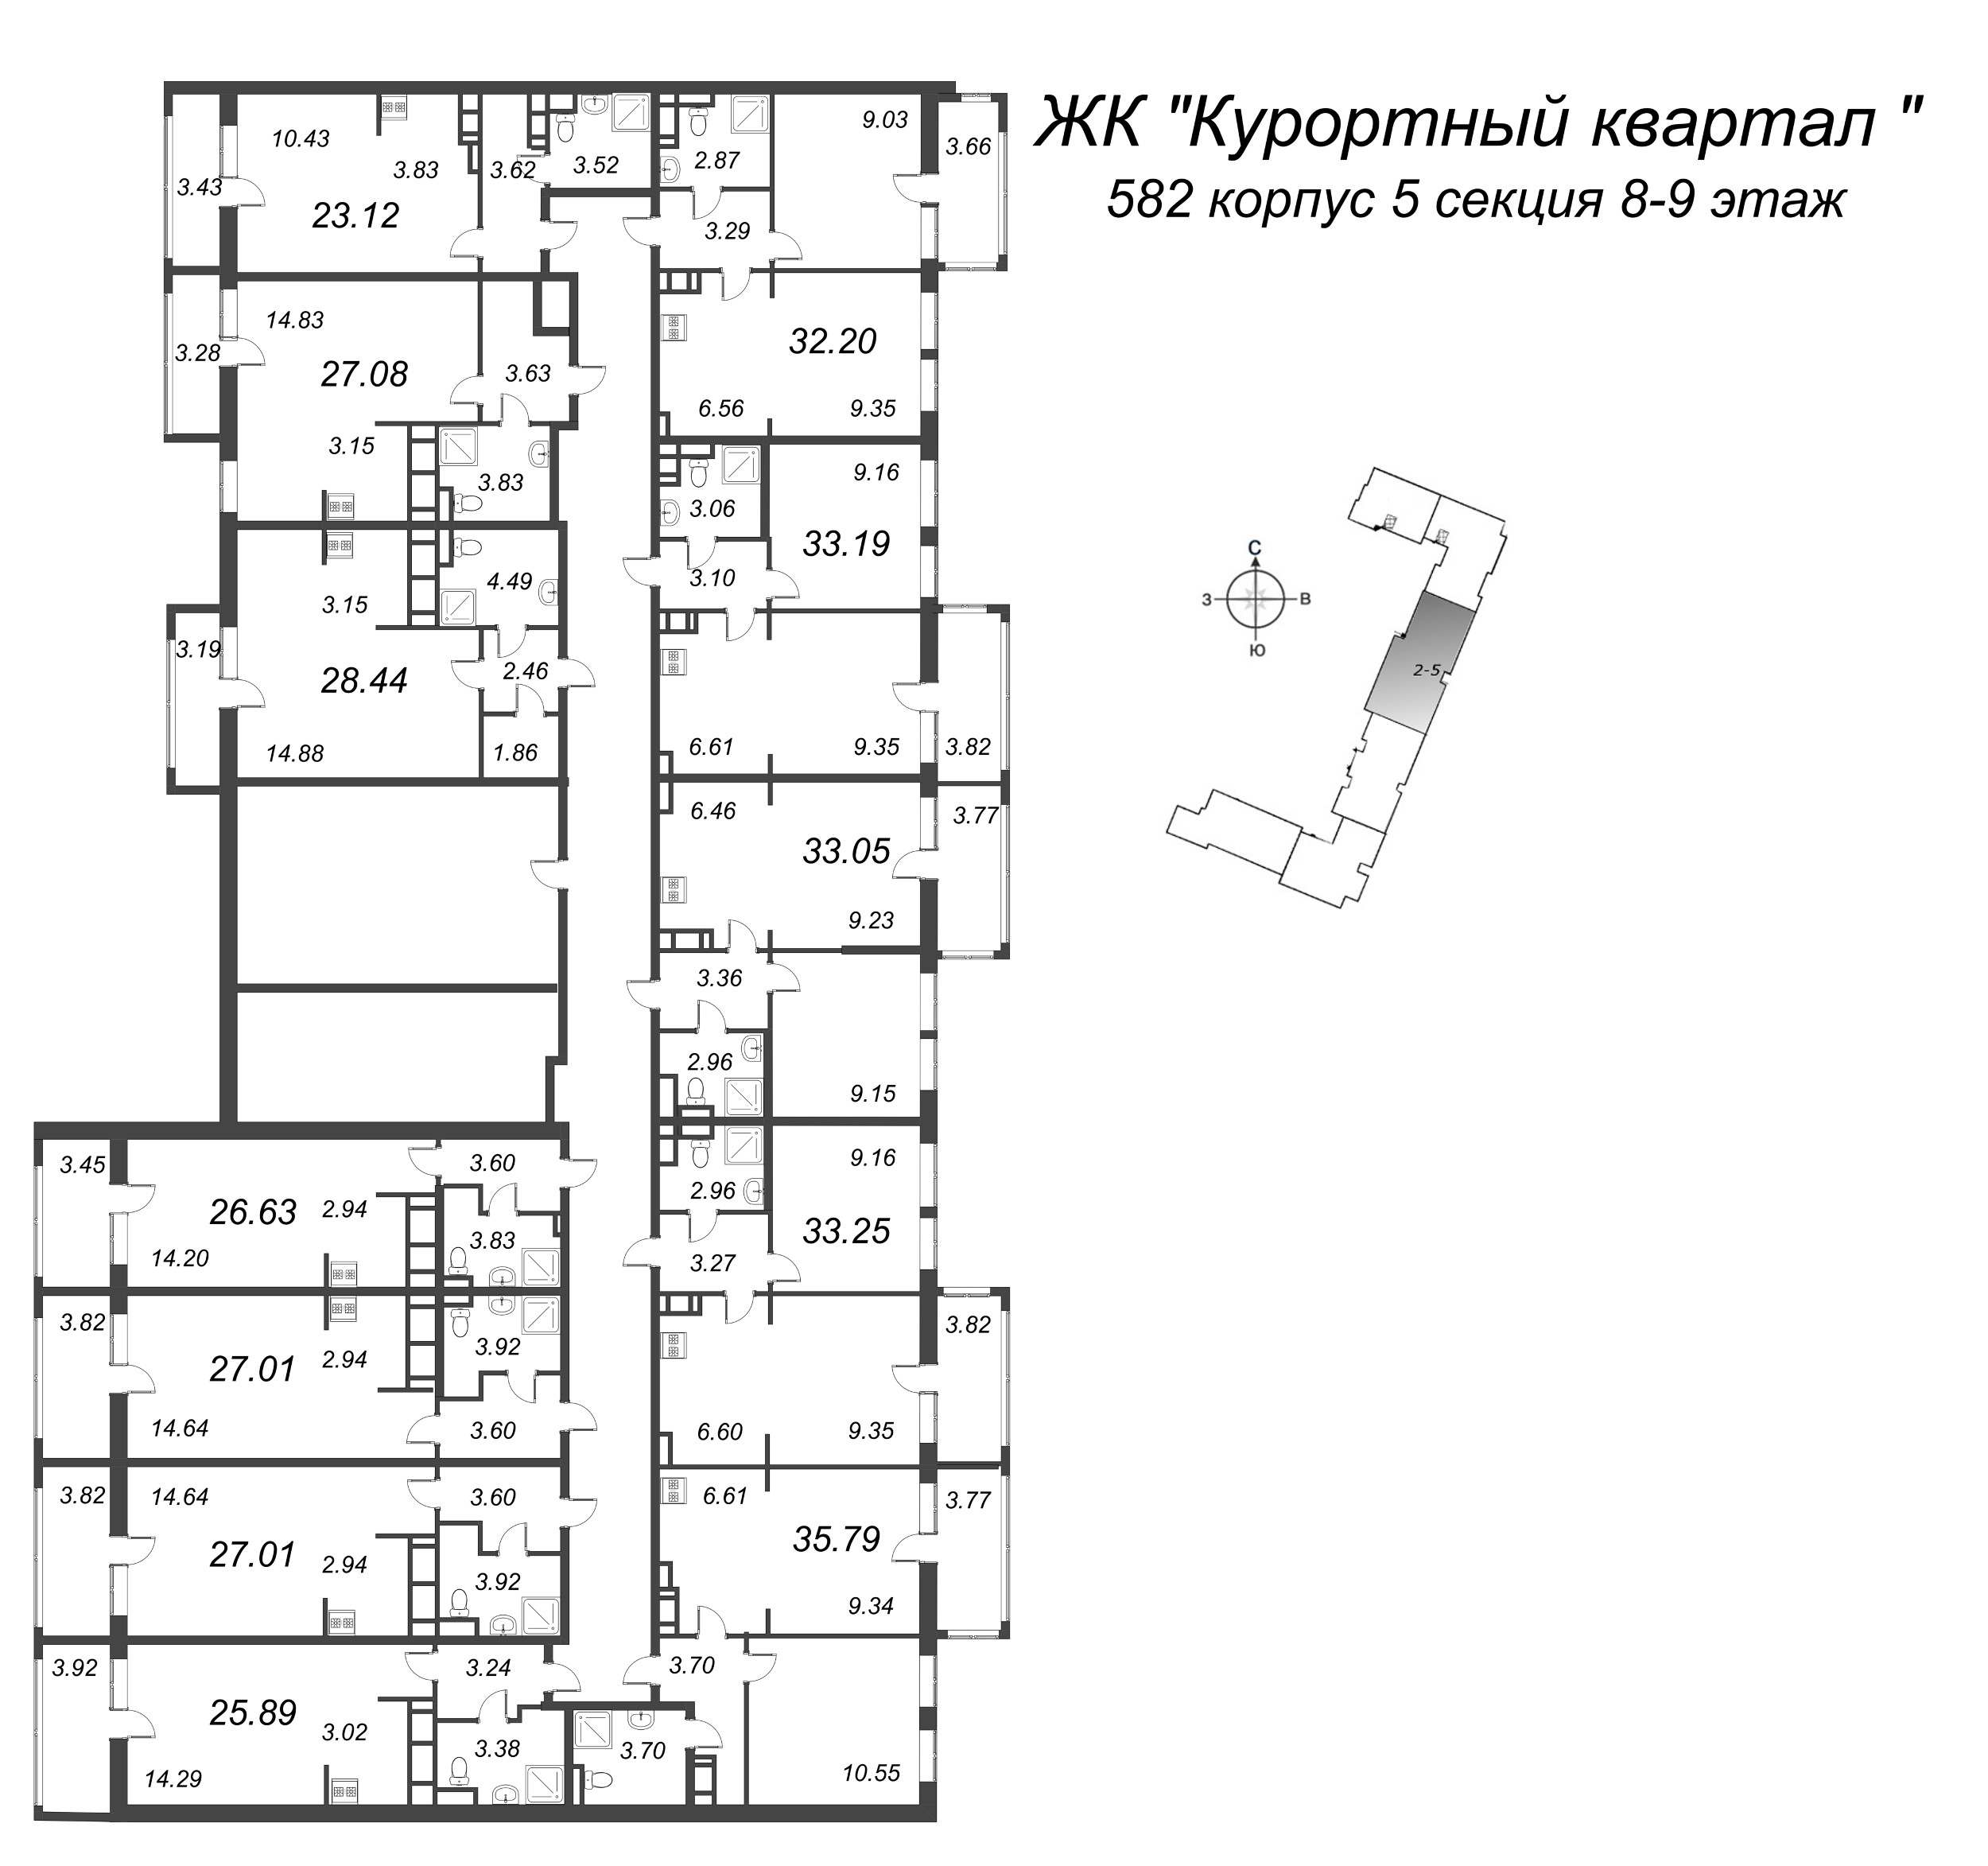 Квартира-студия, 26.63 м² в ЖК "Курортный Квартал" - планировка этажа